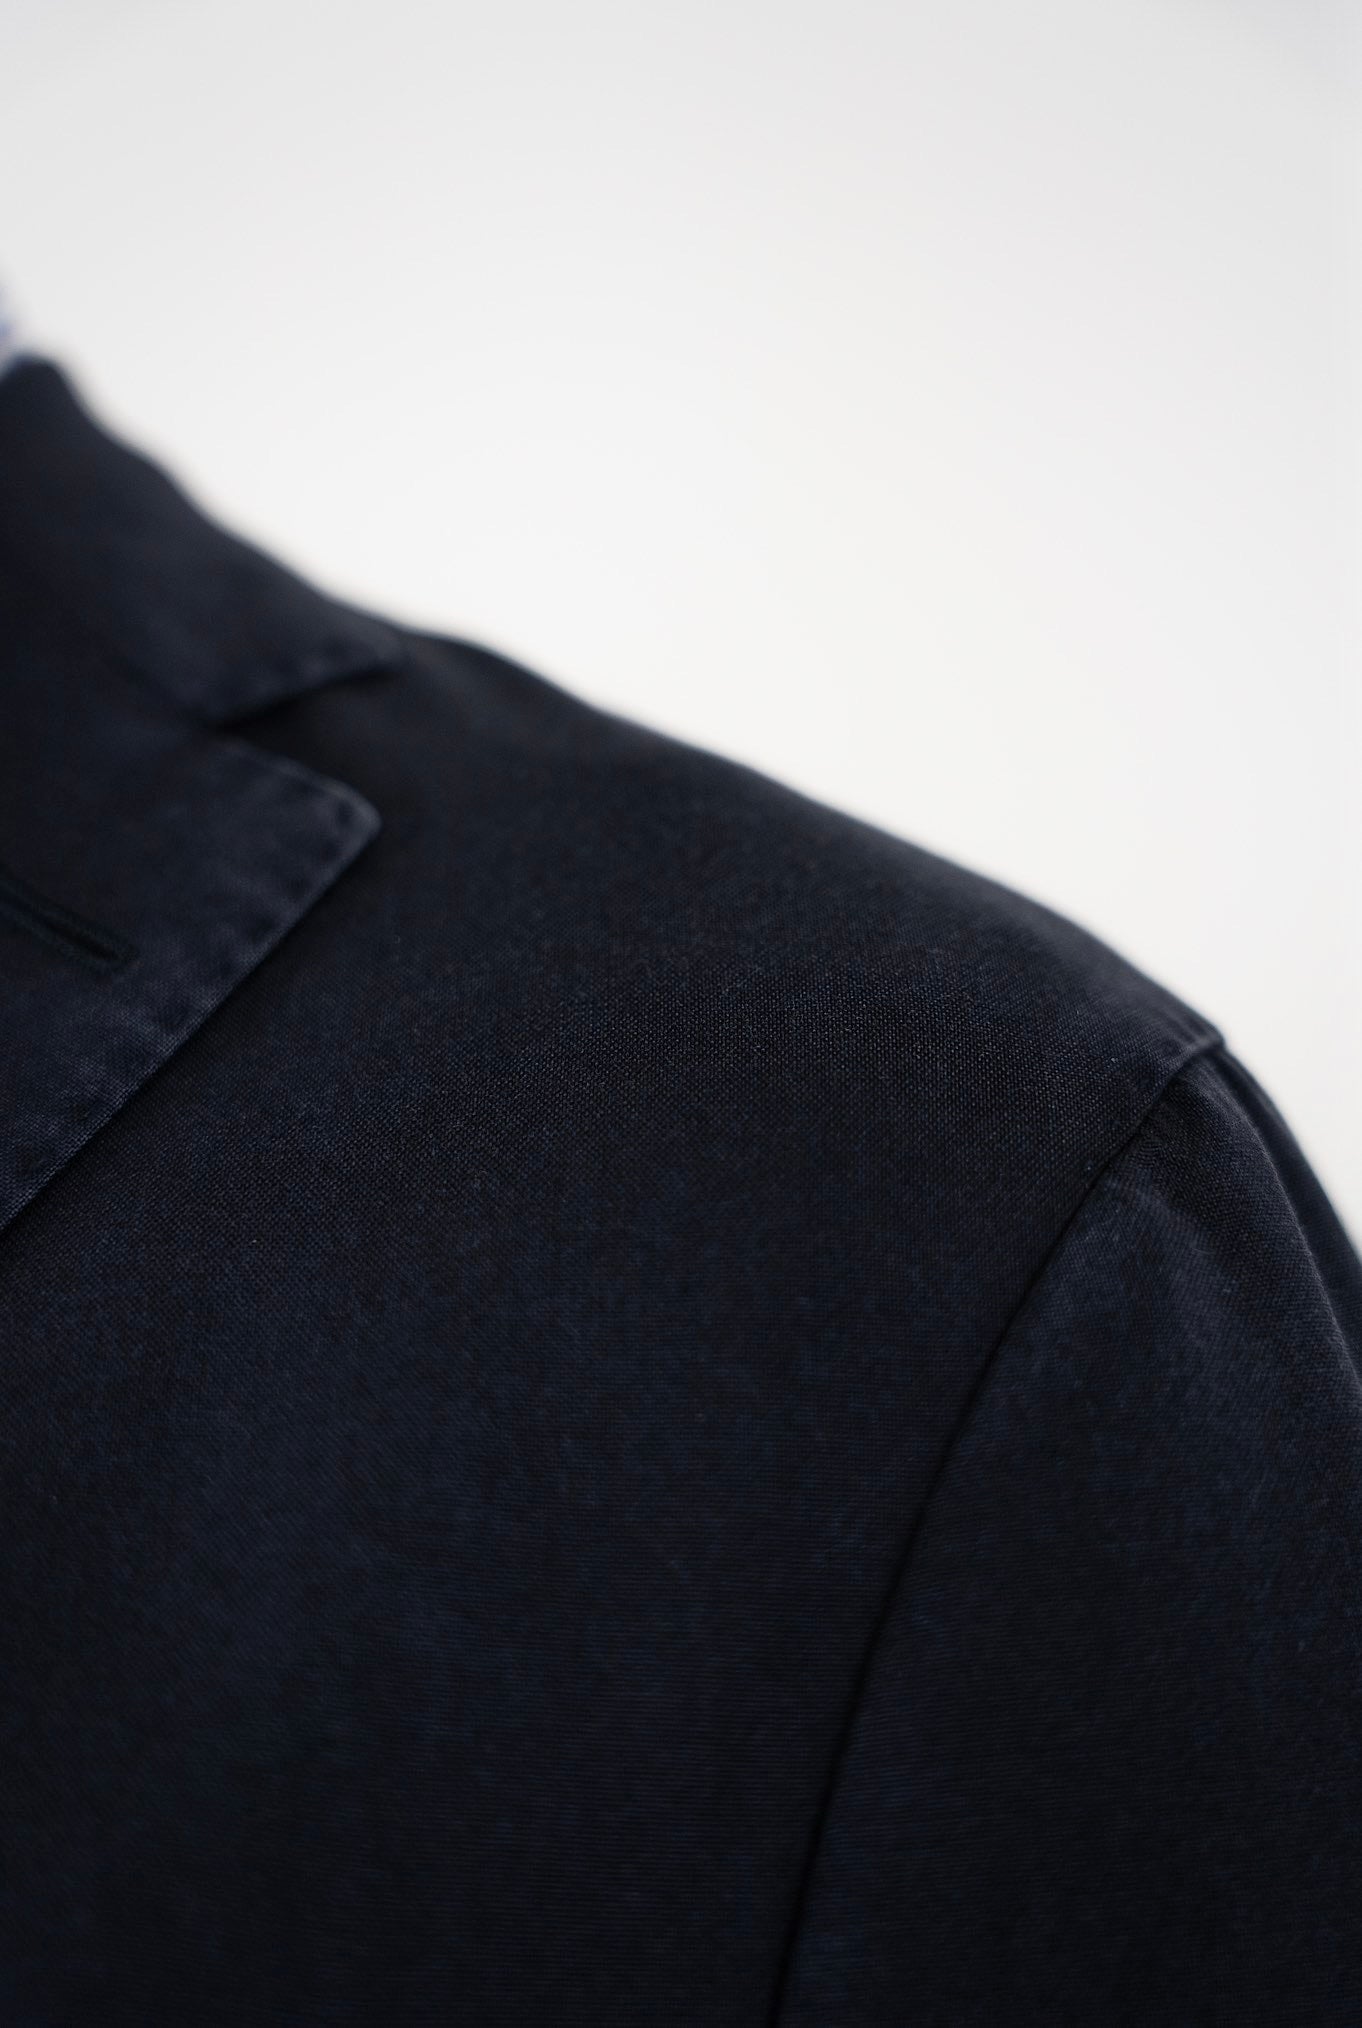 BIGLIOLI Jacket mod. Blue Washed Wool K-Jacket